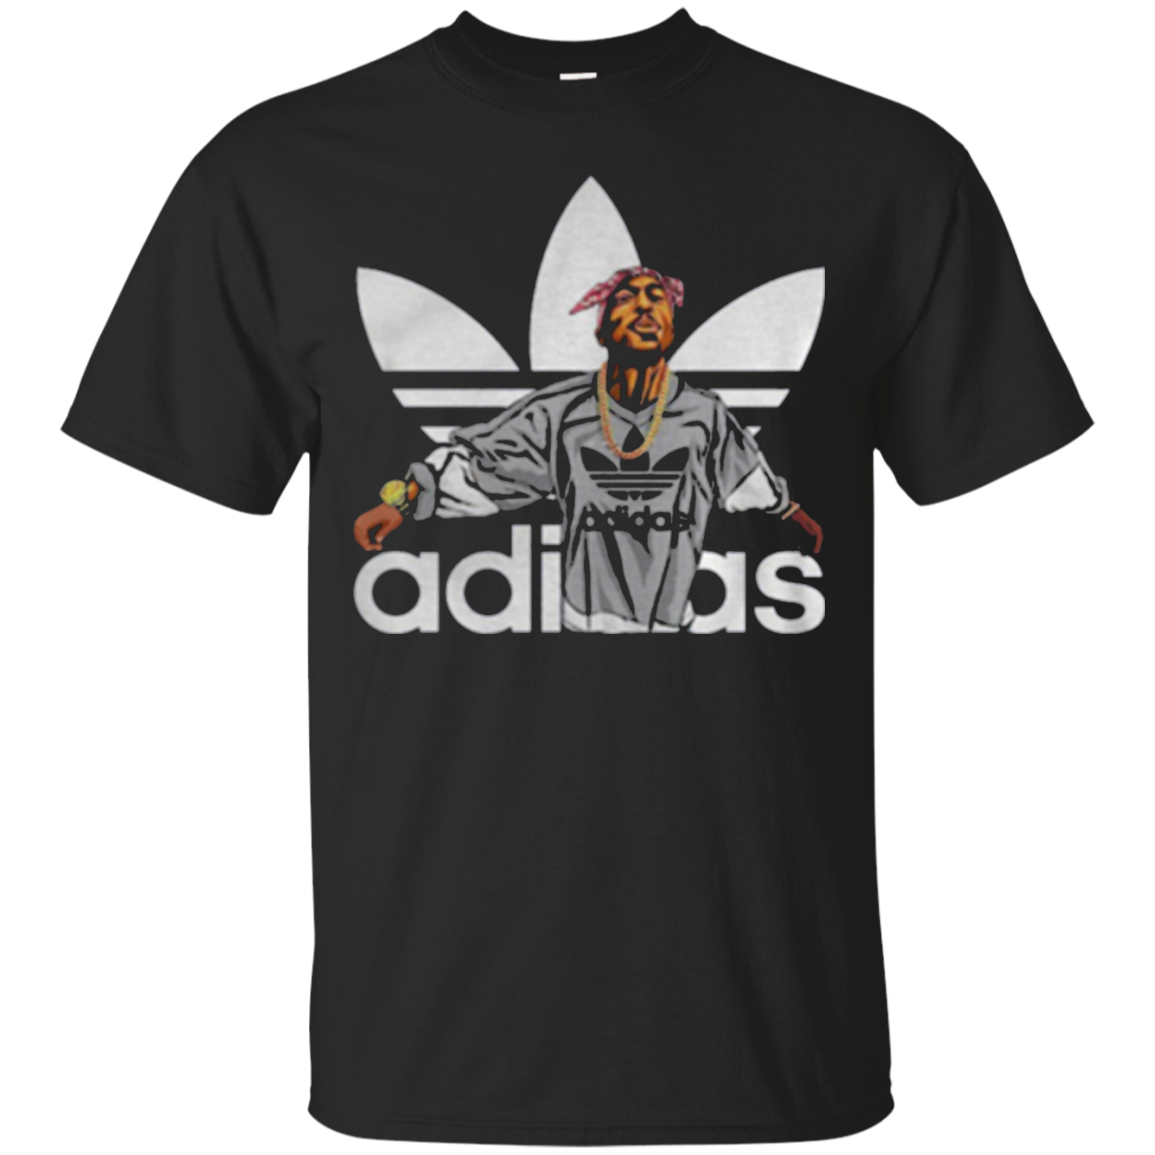 Tupac Shakur Adidas Shirt T-shirt For 